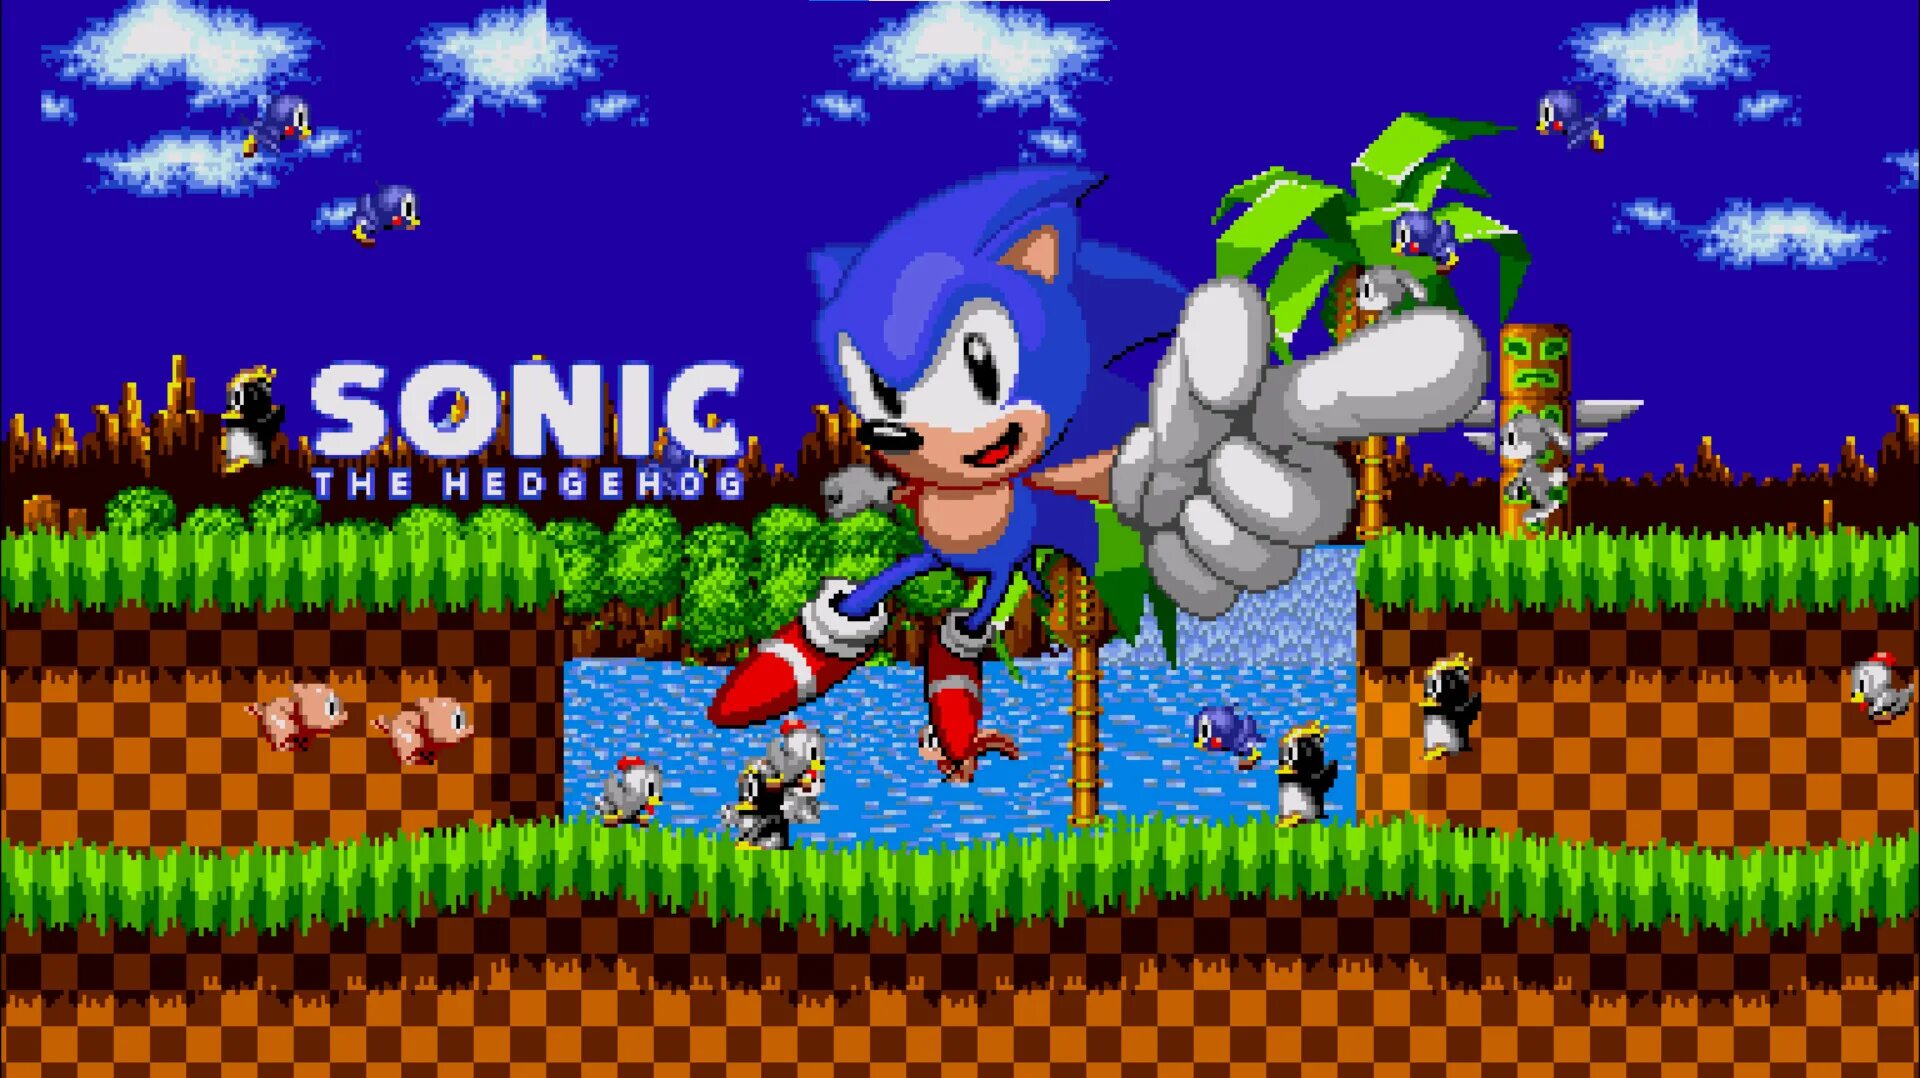 Sonic classic играть. Соник на сеге 16 бит. Соник 1 1991. Sonic the Hedgehog 1 сега. Соник 3 16 бит.